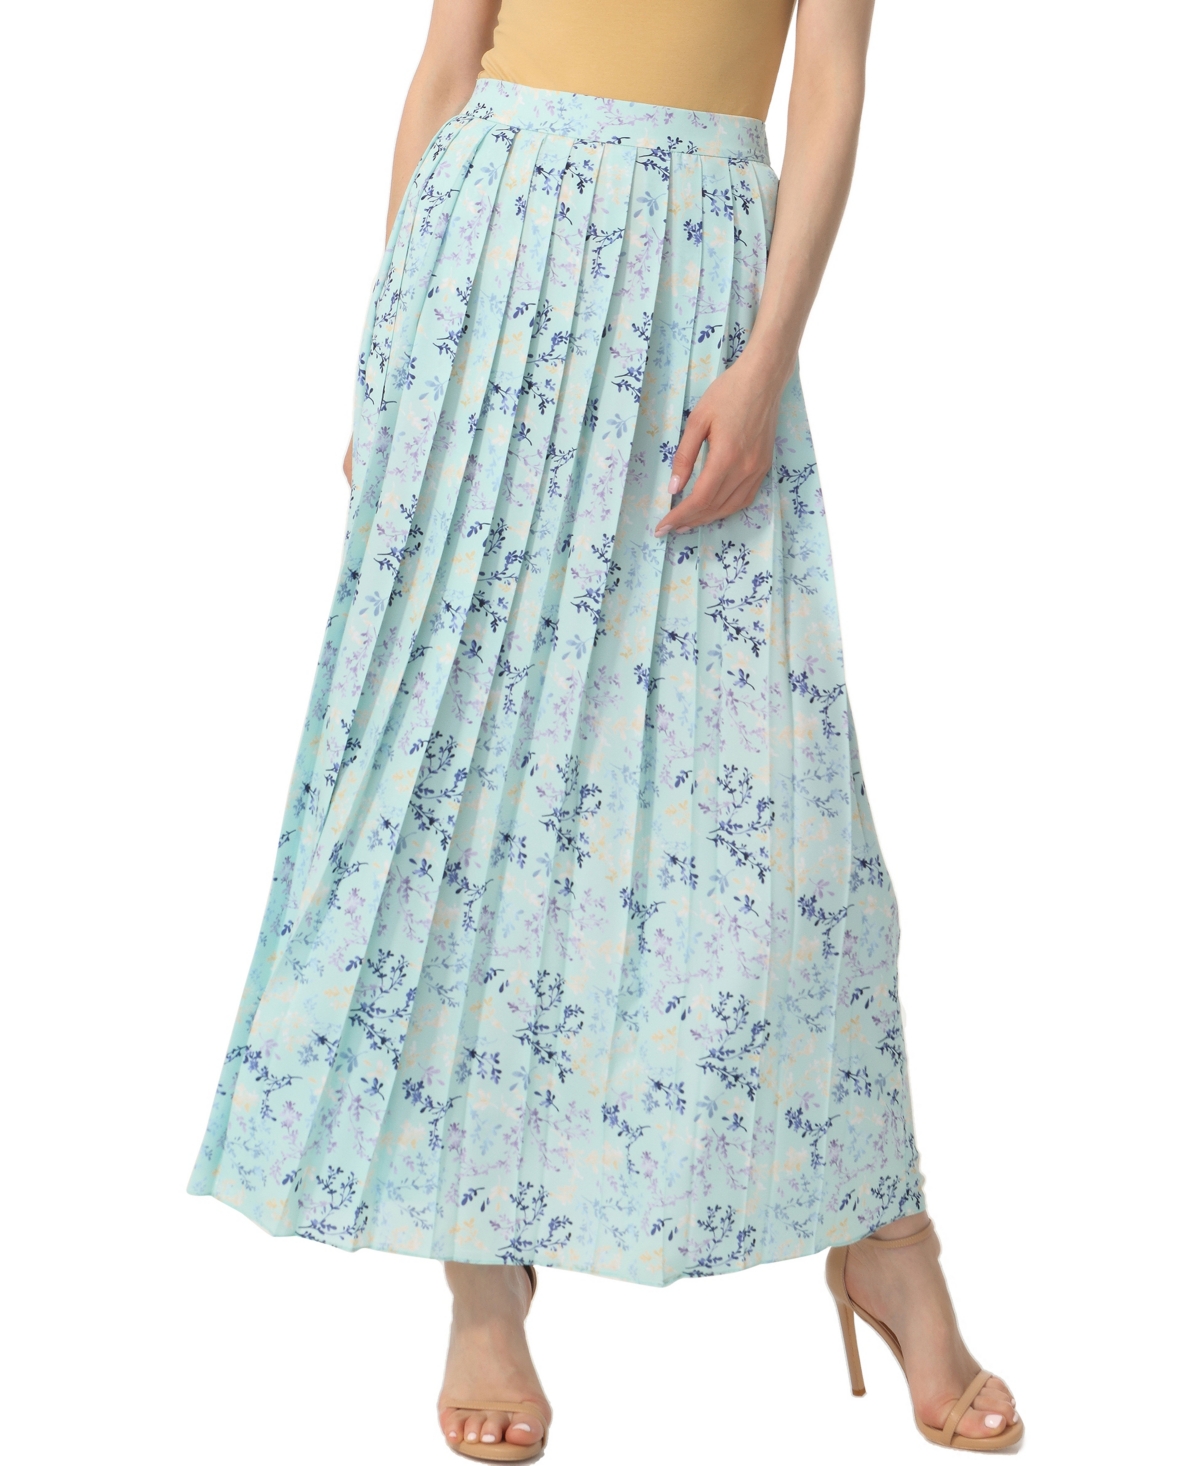 kimi + kai Women's Print Box Pleat Maxi Skirt - Pastel Turquoise